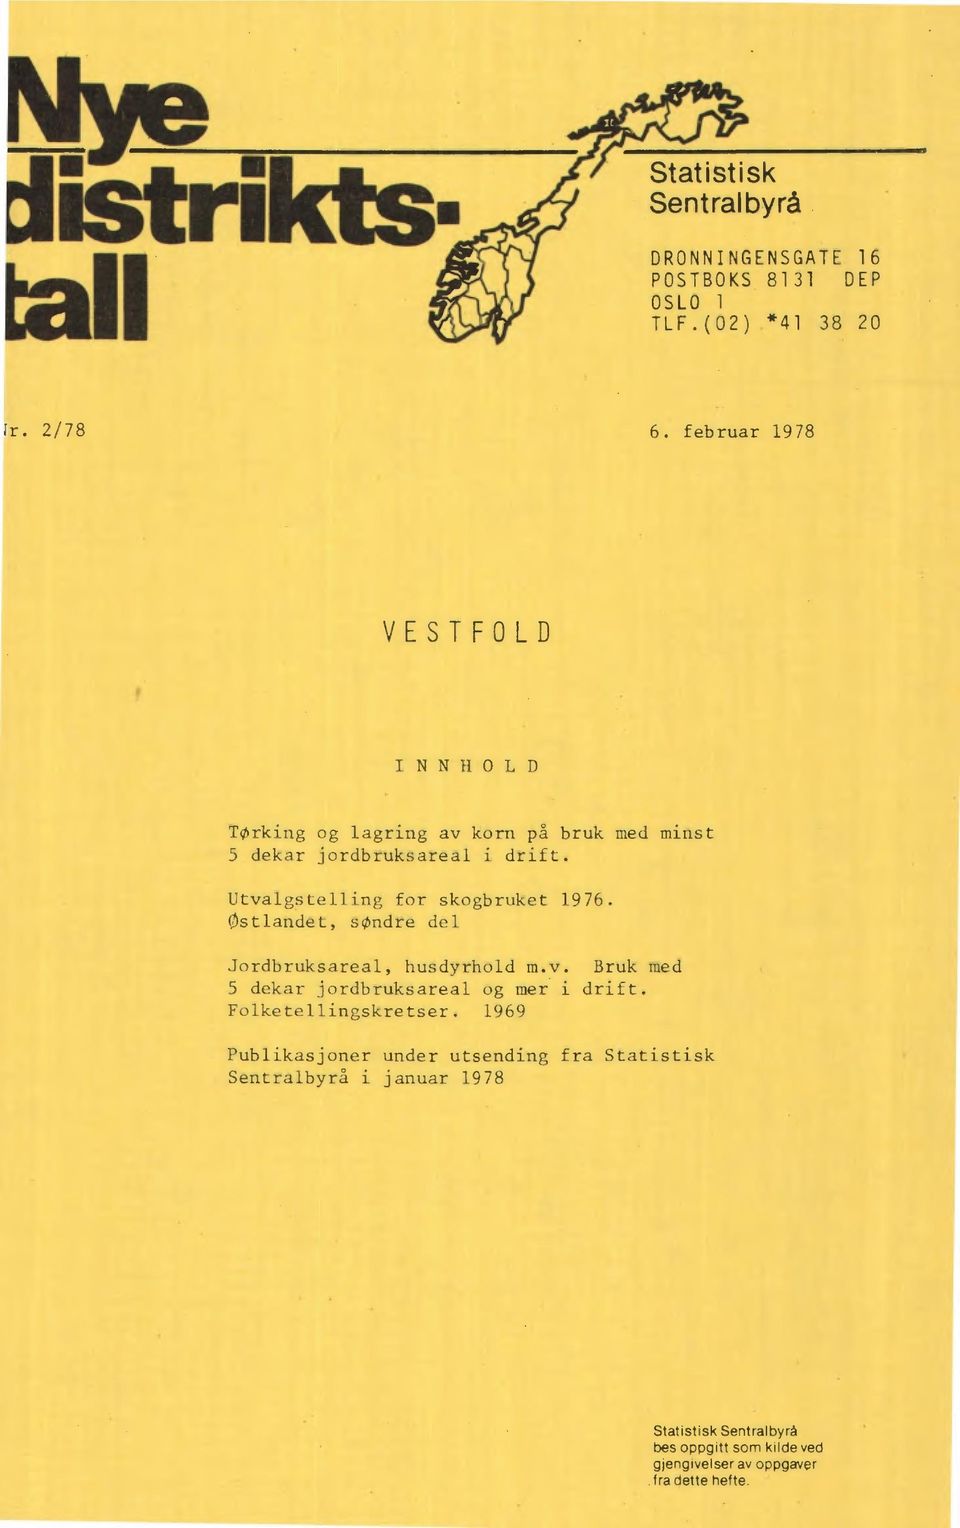 Utvalgstelling for skogbruket 1976. Østlandet, søndre del Jordbruksareal, husdyrhold m.v. Bruk med 5 dekar jordbruksareal og mer i drift.